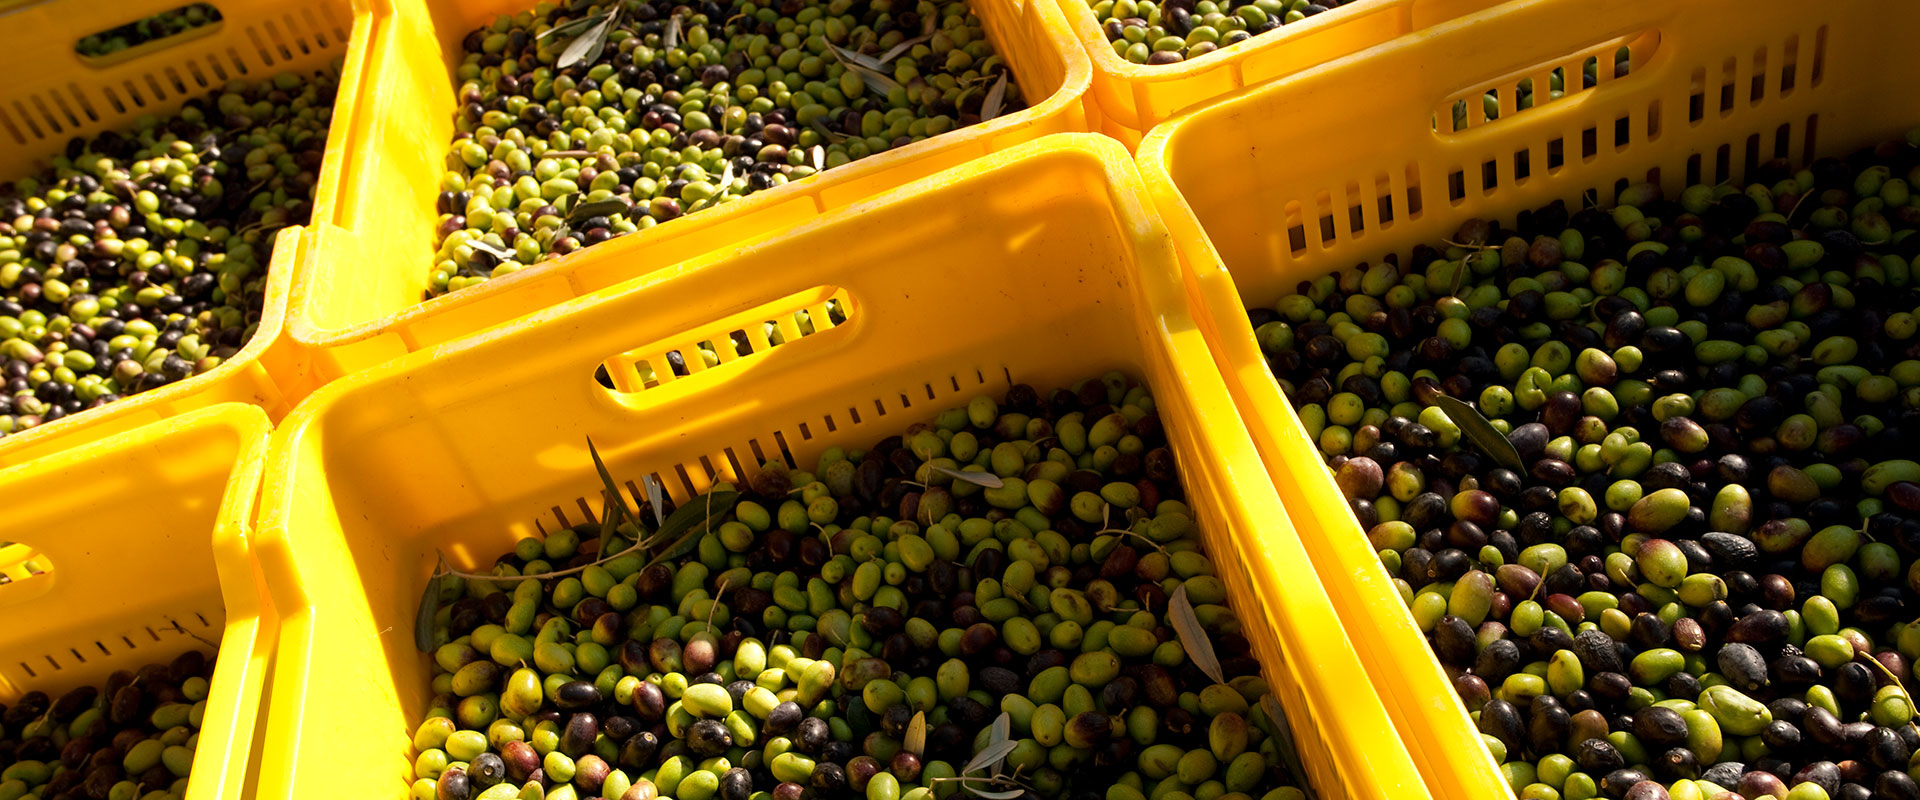 Come si classifica l'olio di oliva